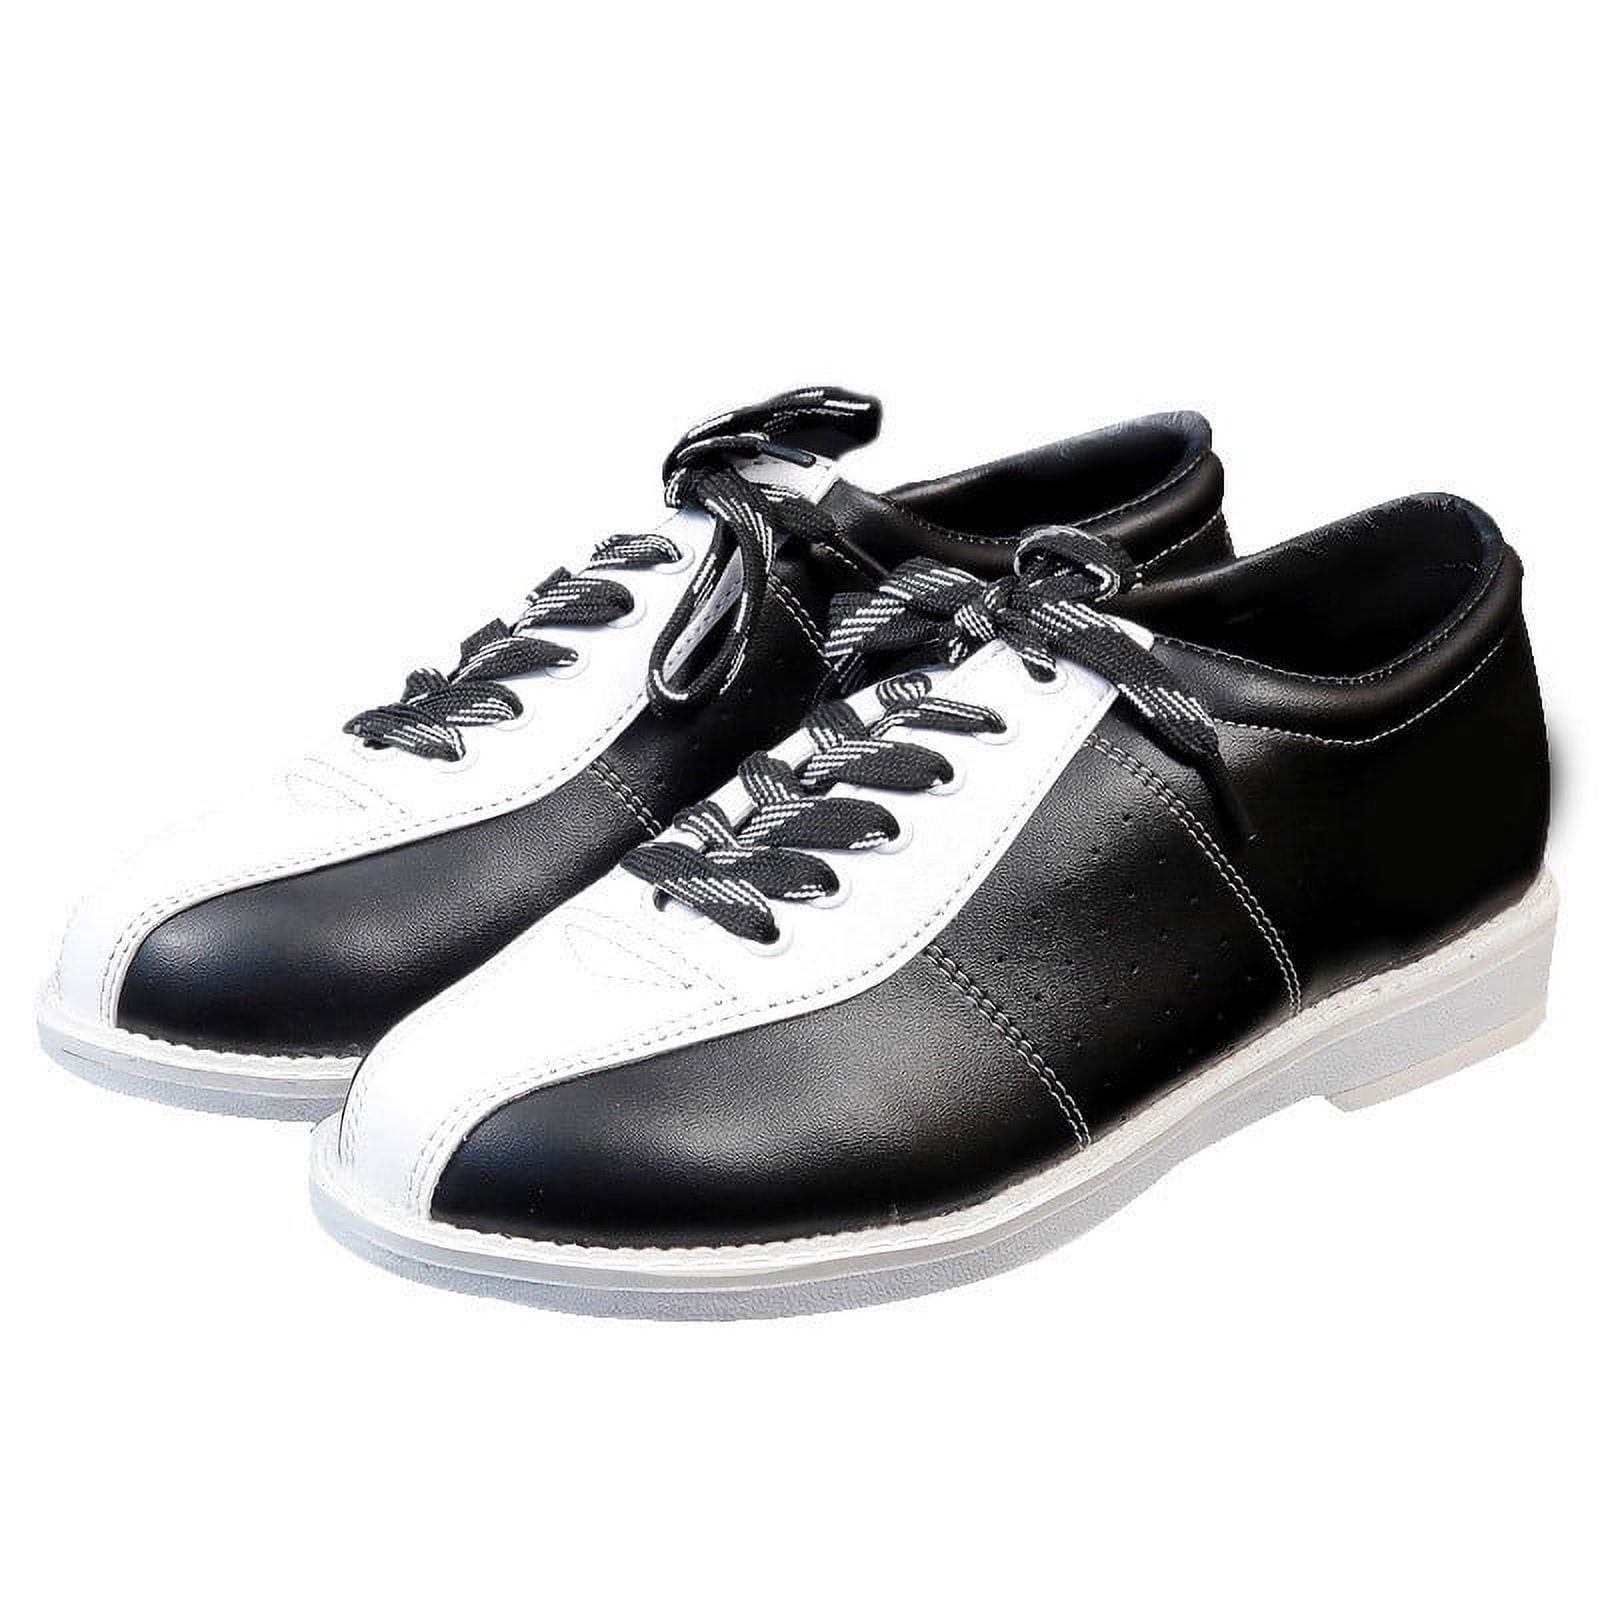 Dexter Raquel IV White/Blue Women's Bowling Shoes, Size 5.5 - Walmart.com